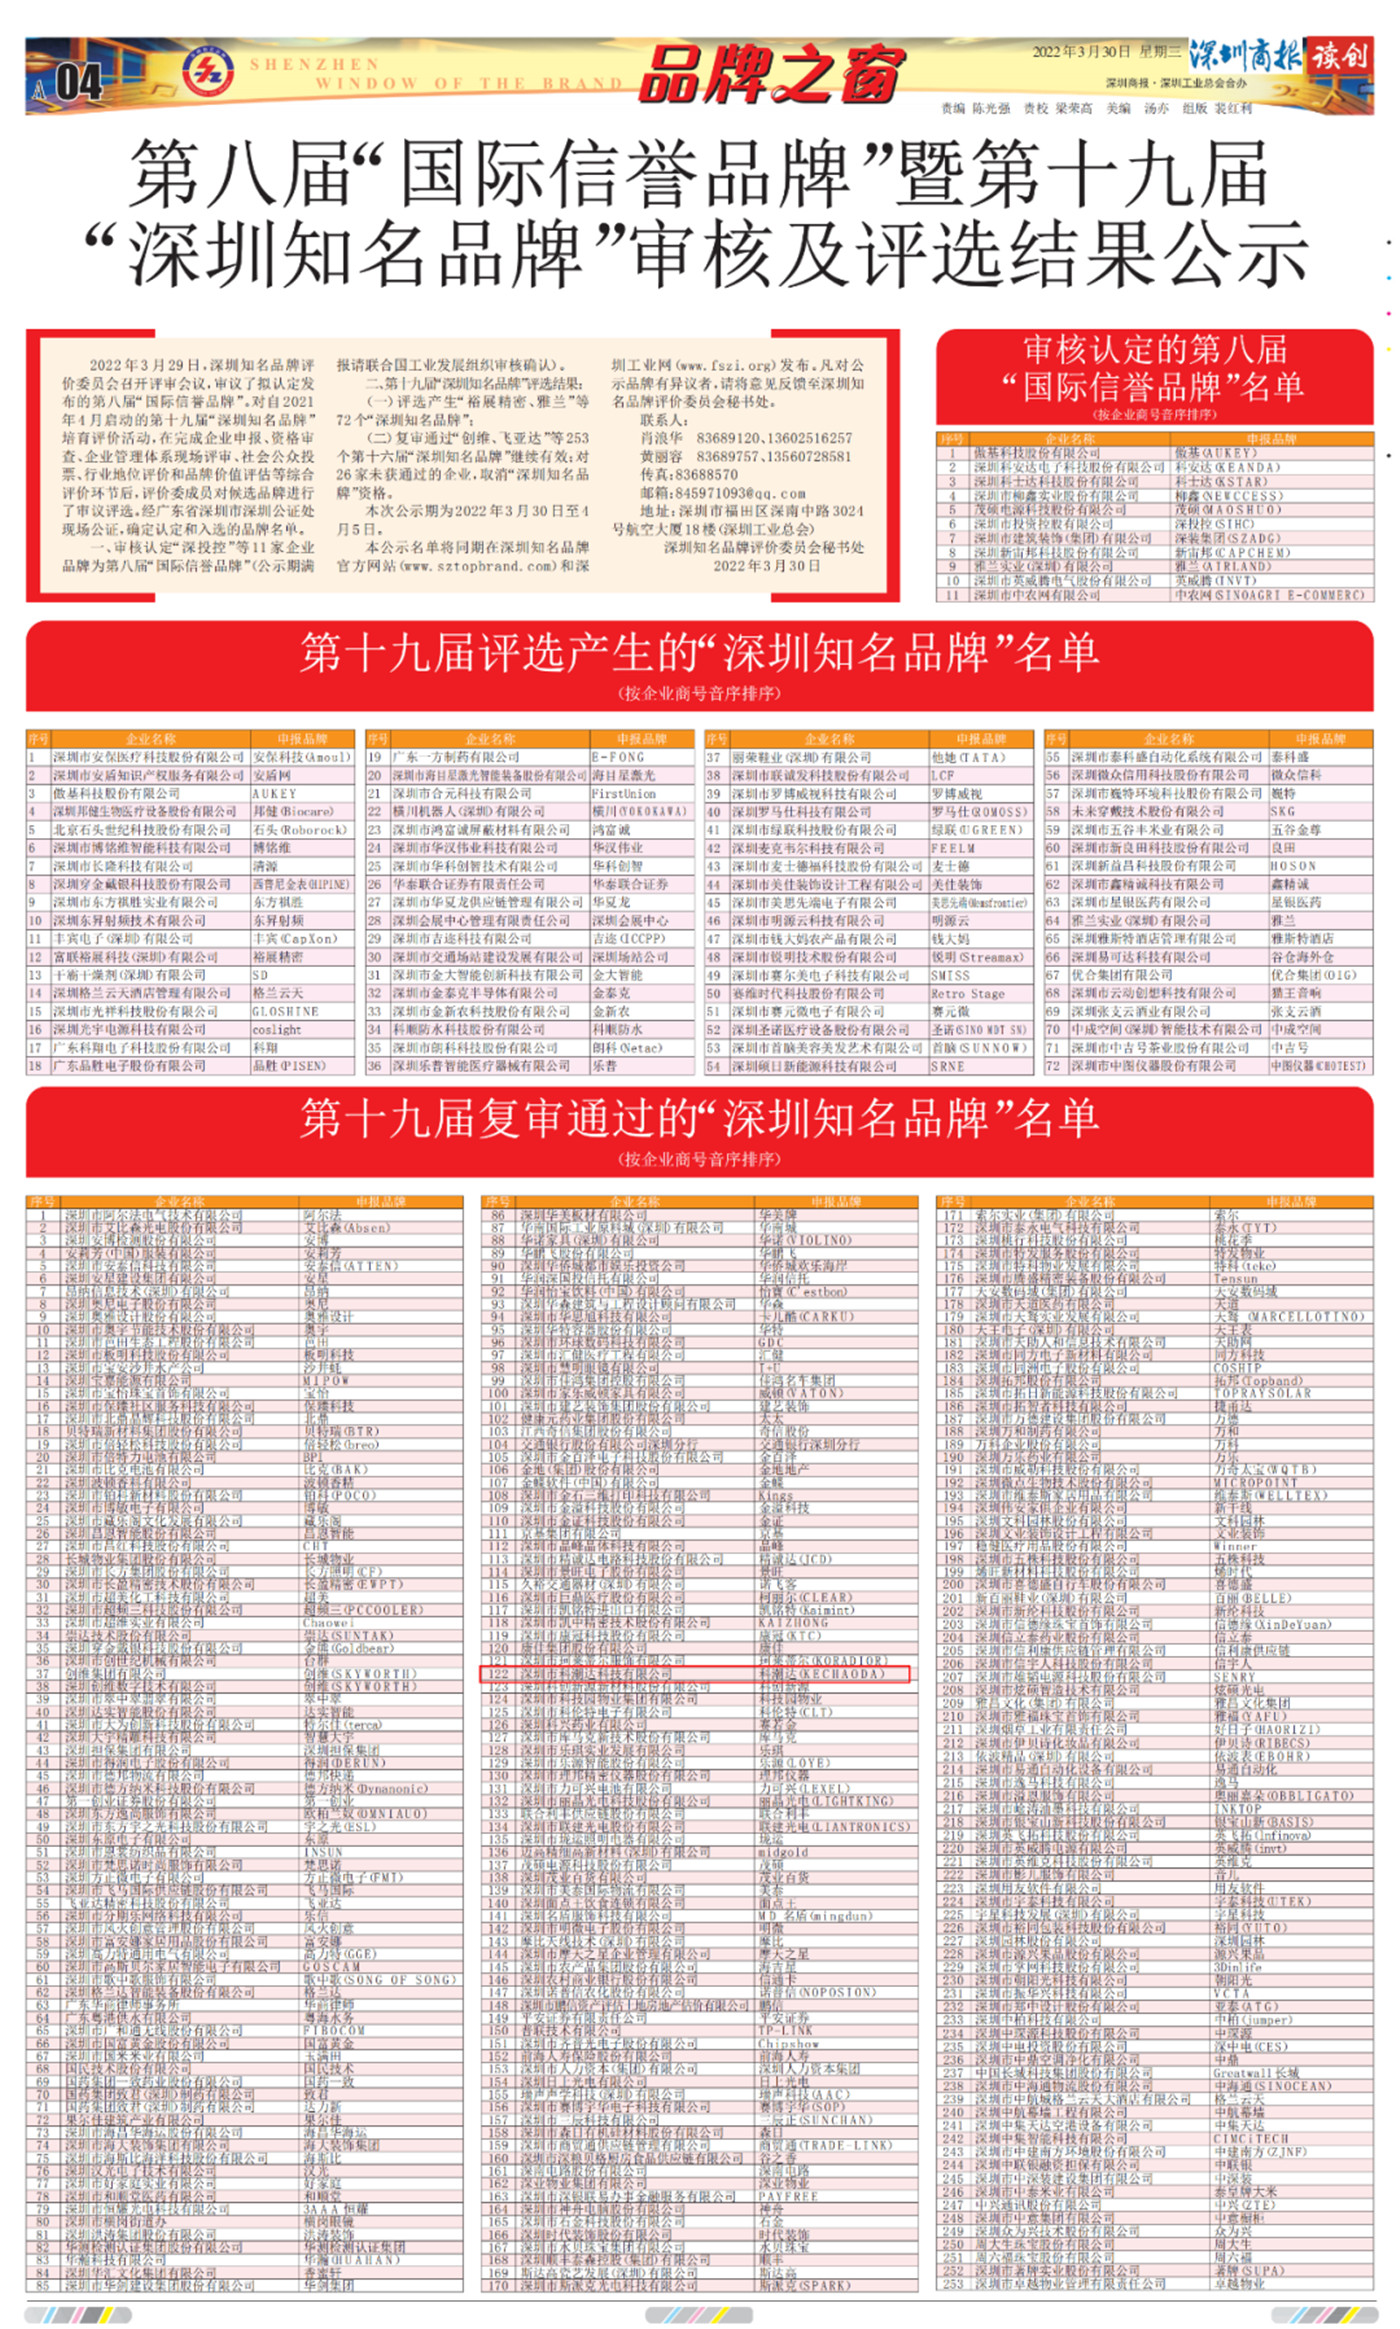 KECHAODA obitelji plima prolaza Shenzhen poznatih marki pregled!(2)